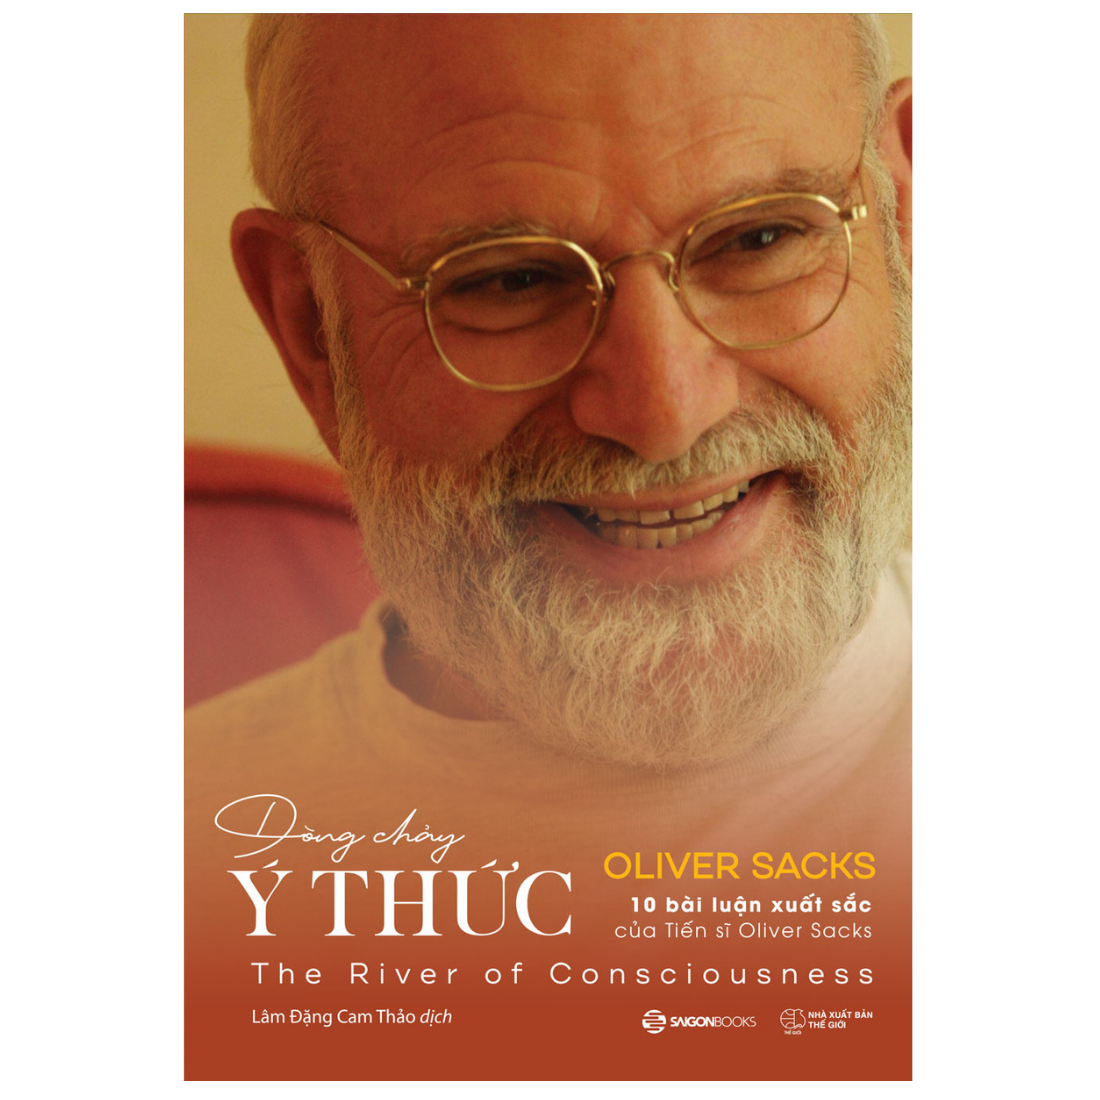 SÁCH - Dòng chảy ý thức (The River Of Consciousness) - Tác giả Oliver Sacks